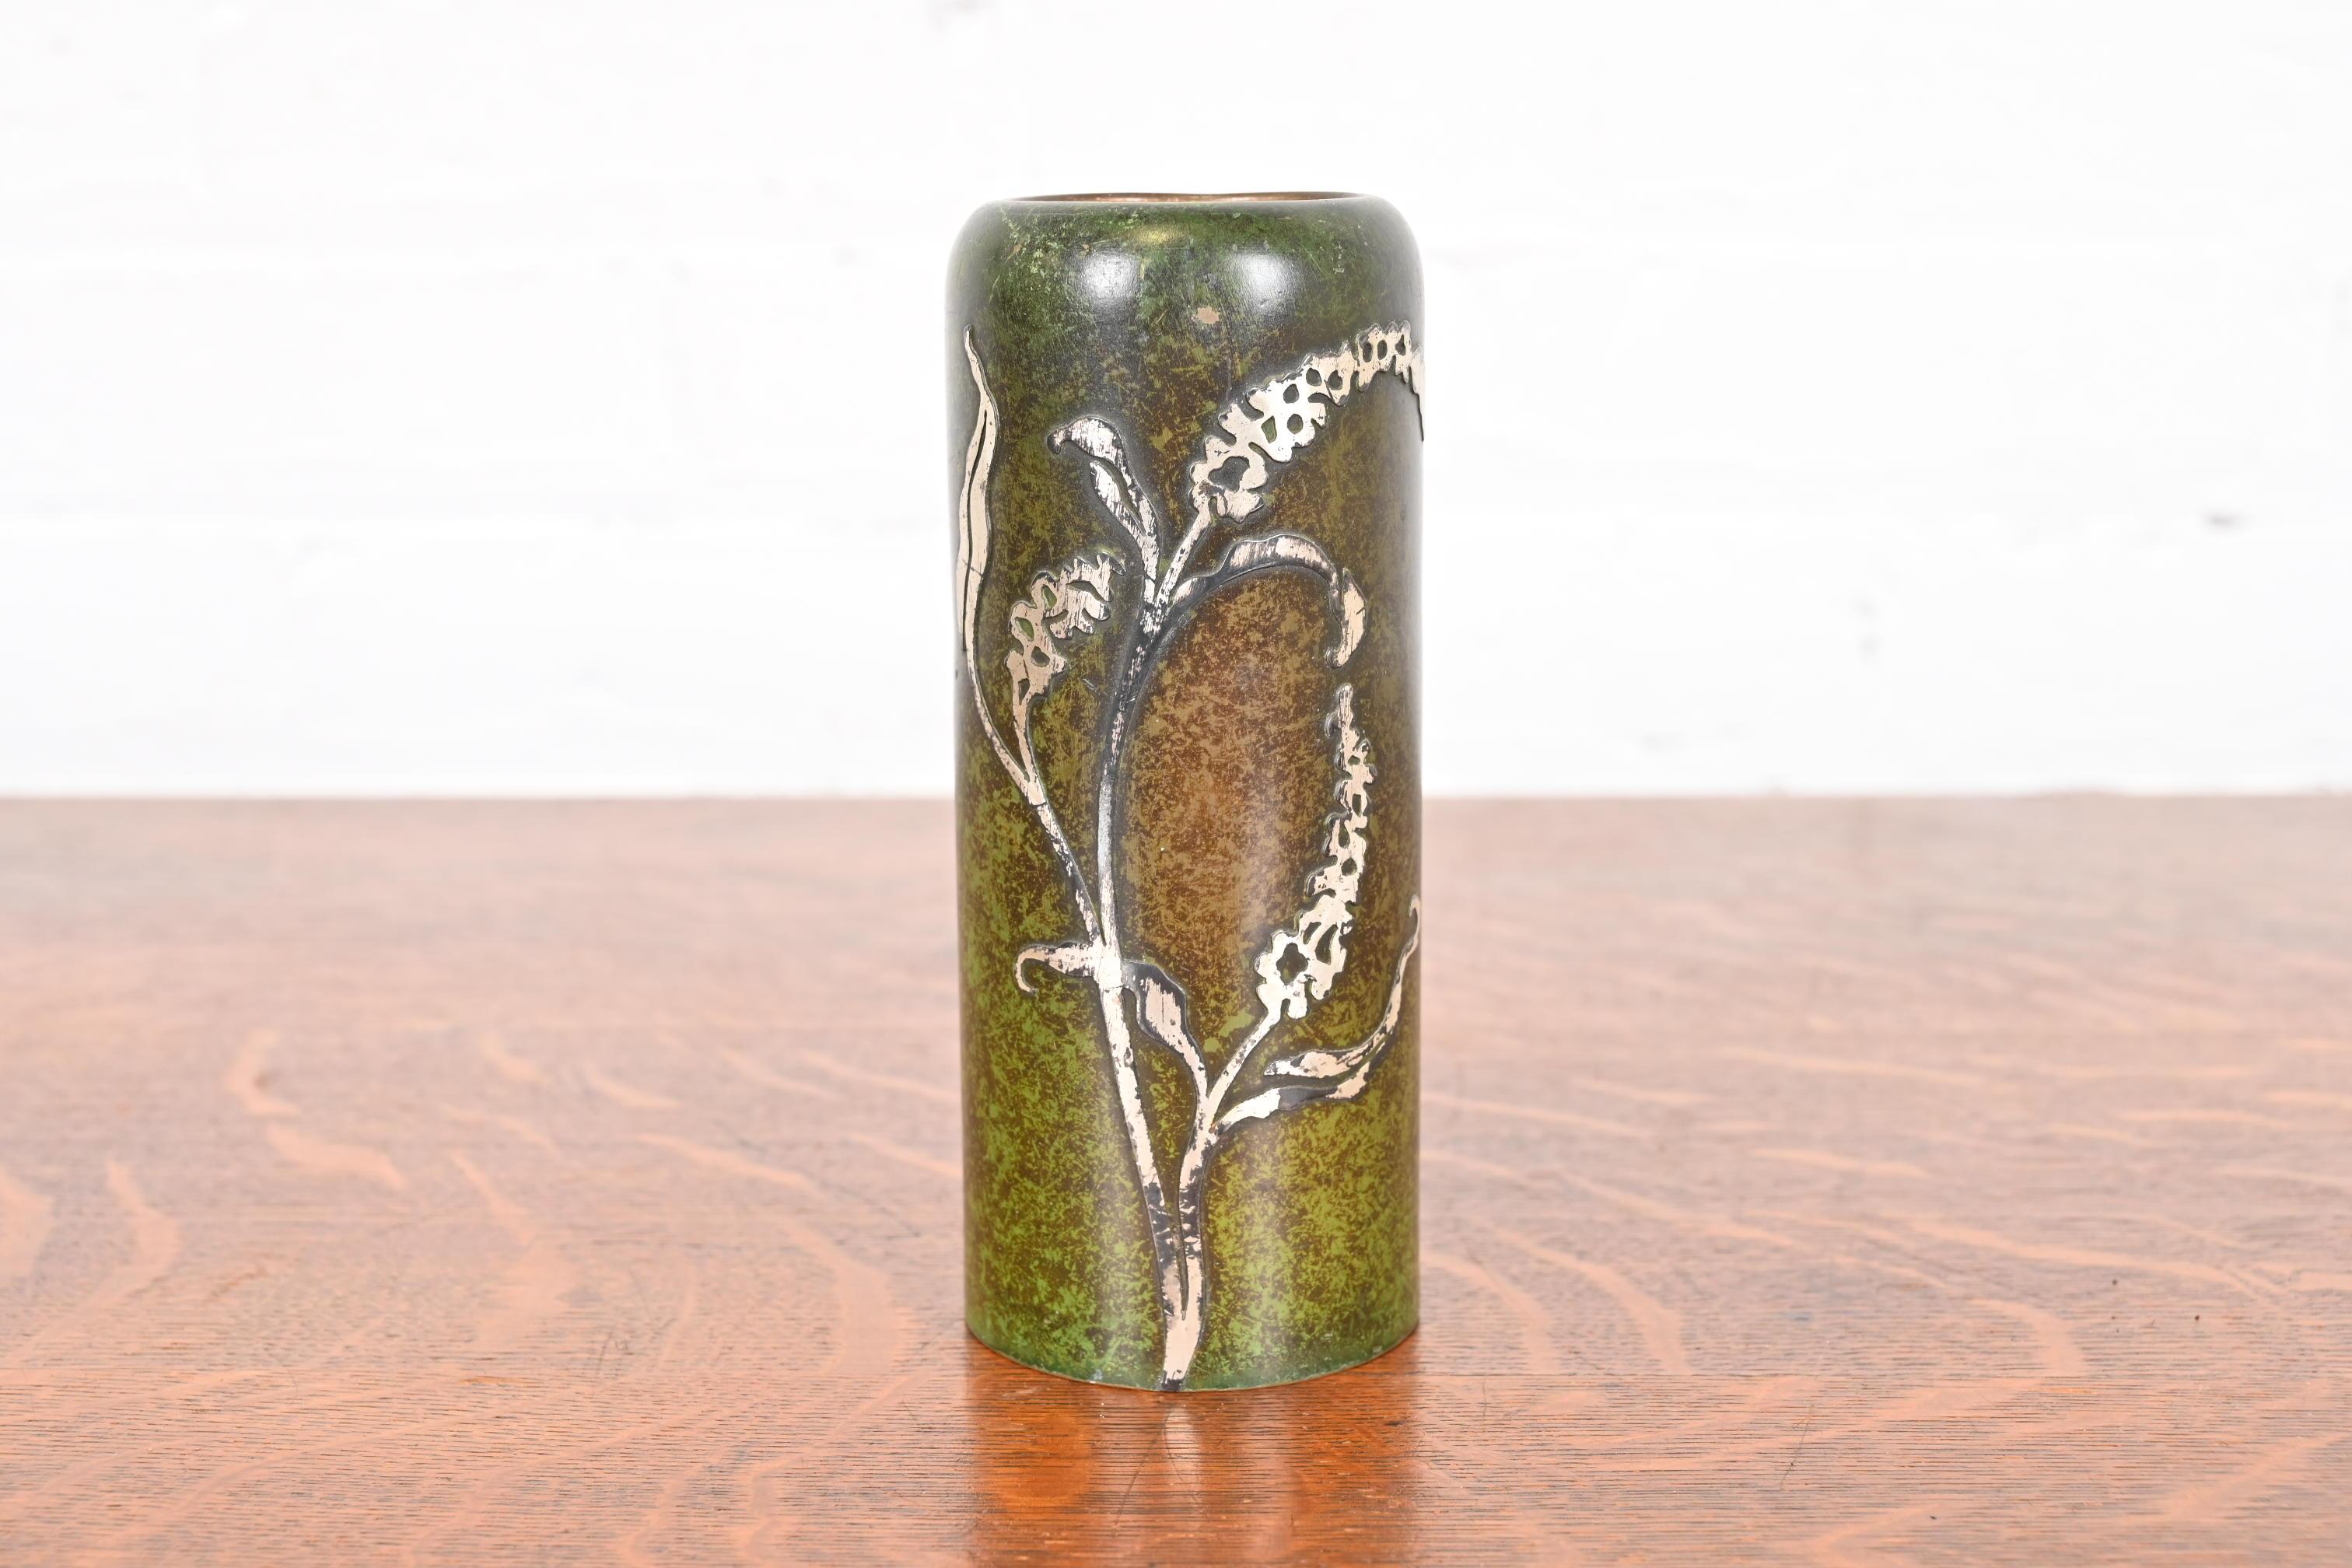 Eine herrliche Arts & Crafts Periode Sterling Silber auf Bronze florale Vase mit Grünspan Patina

Von Heintz Art Metal Shop

USA, Anfang 20. Jahrhundert

Maße: 2,5 